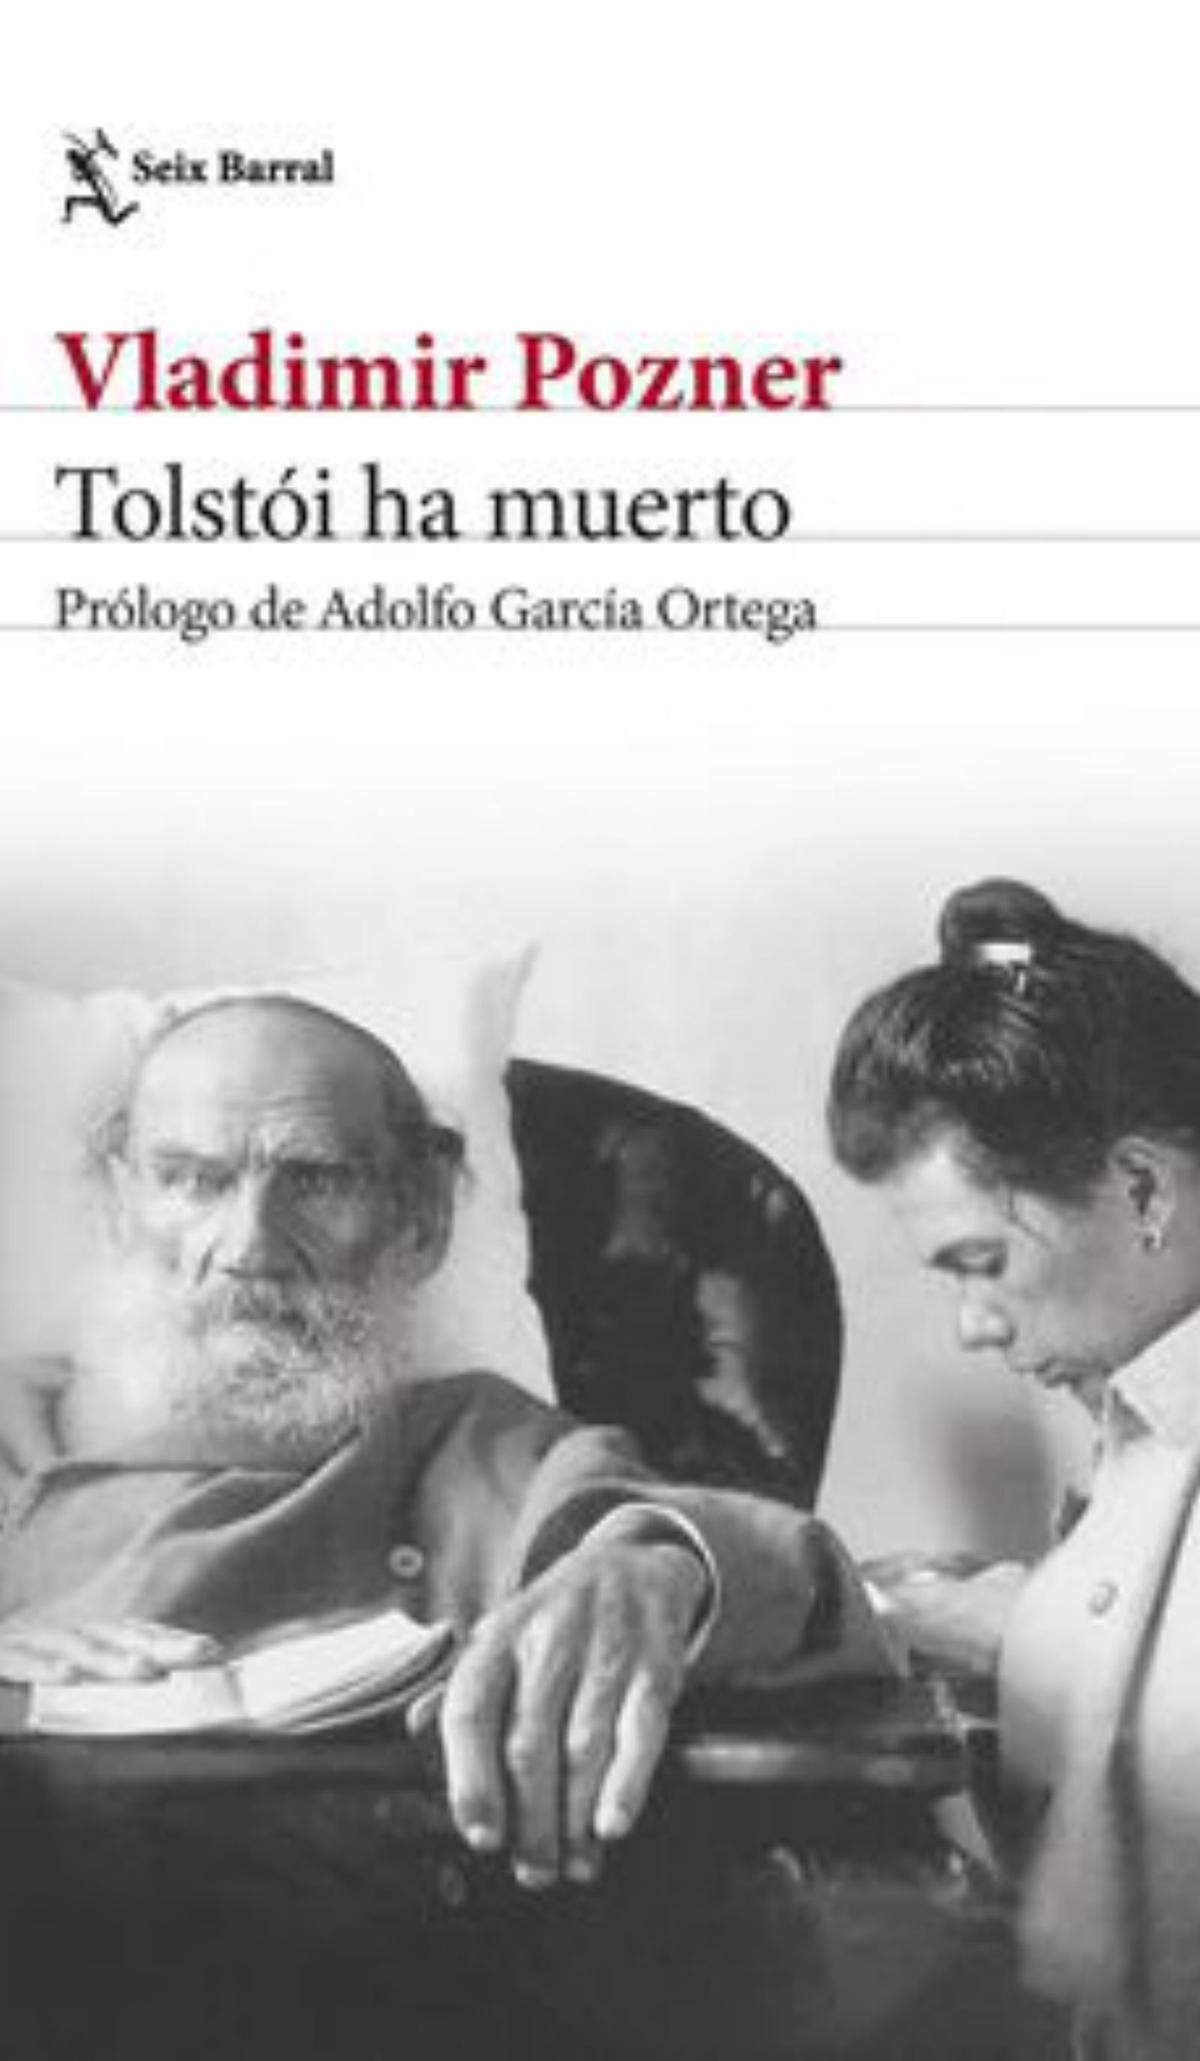 VLADIMIR POZNER. Tolstói ha muerto. Traducción de Adolfo García Ortega. Seix Barral, 328 páginas, 19,50 €.